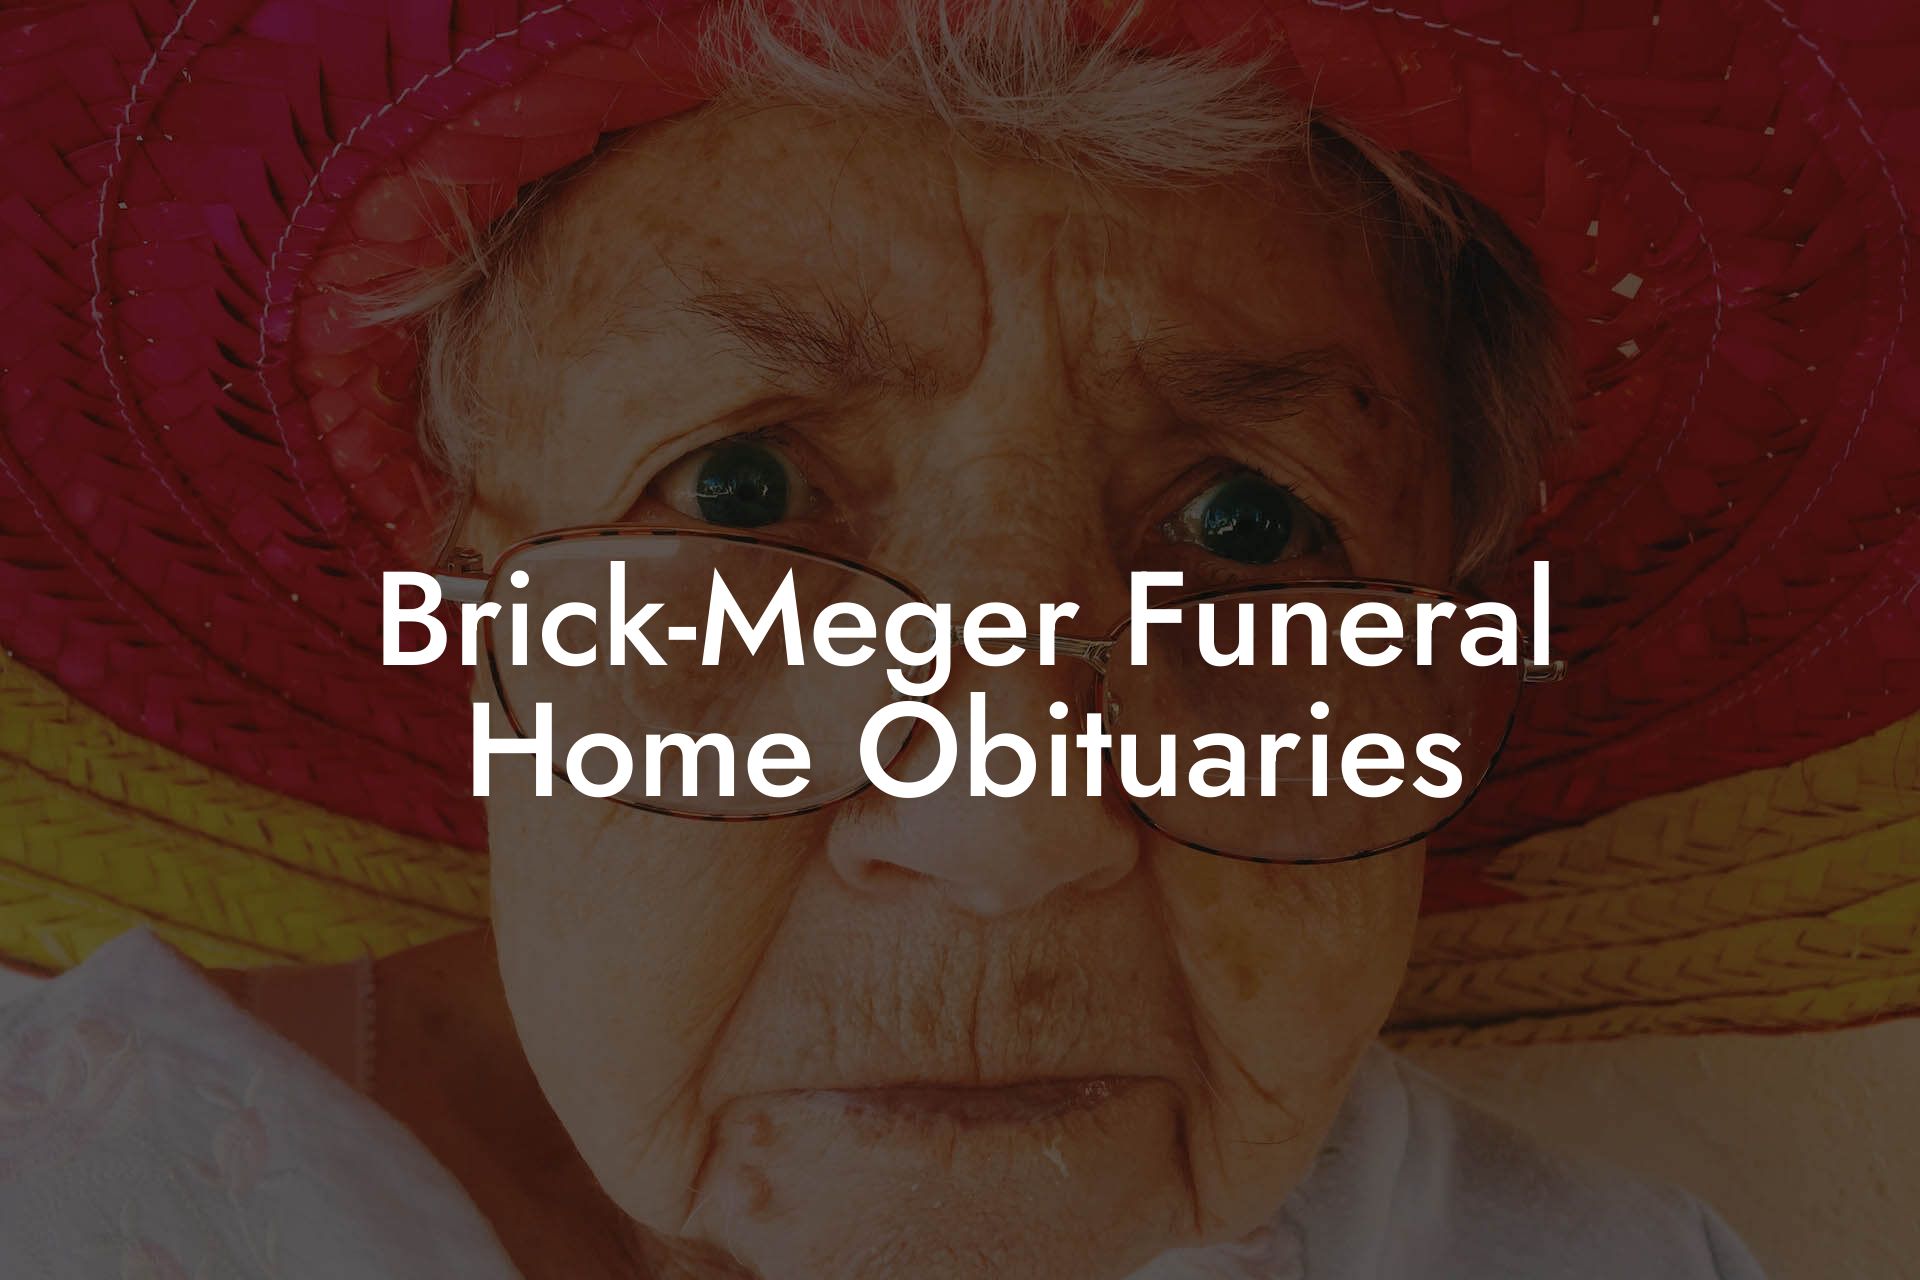 Brick-Meger Funeral Home Obituaries